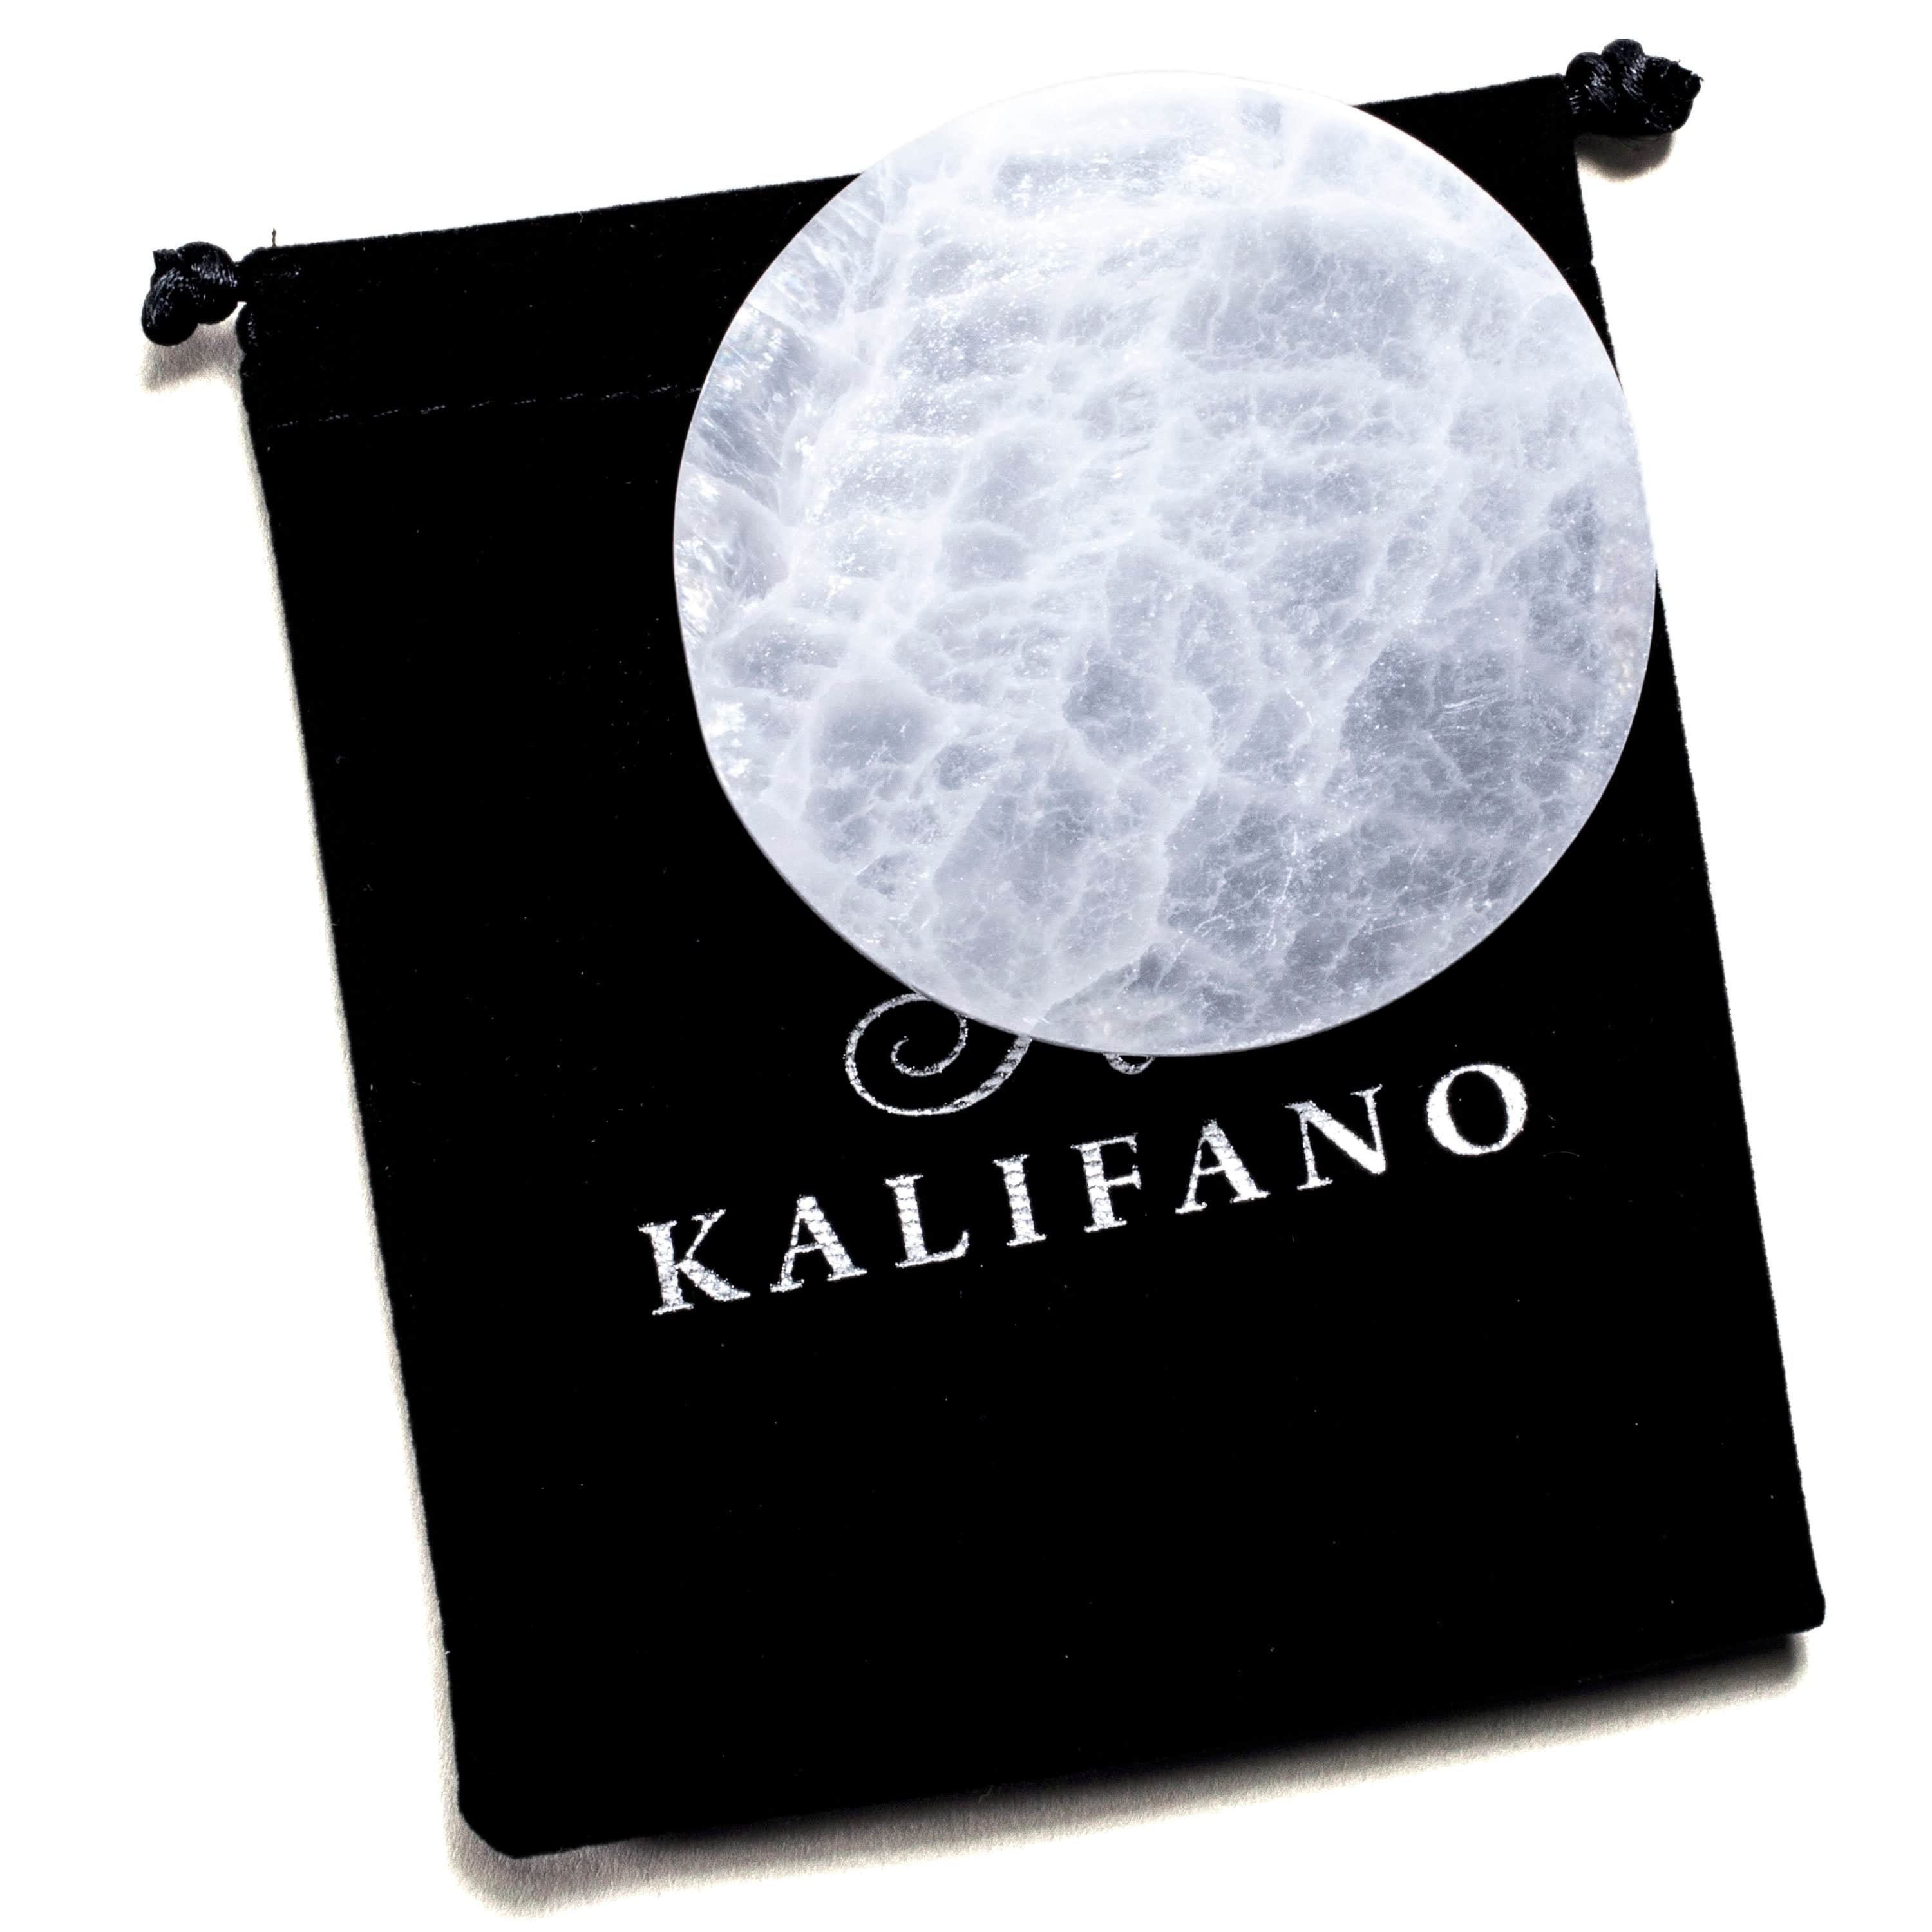 KALIFANO Selenite Selenite Crystal Charging Plate